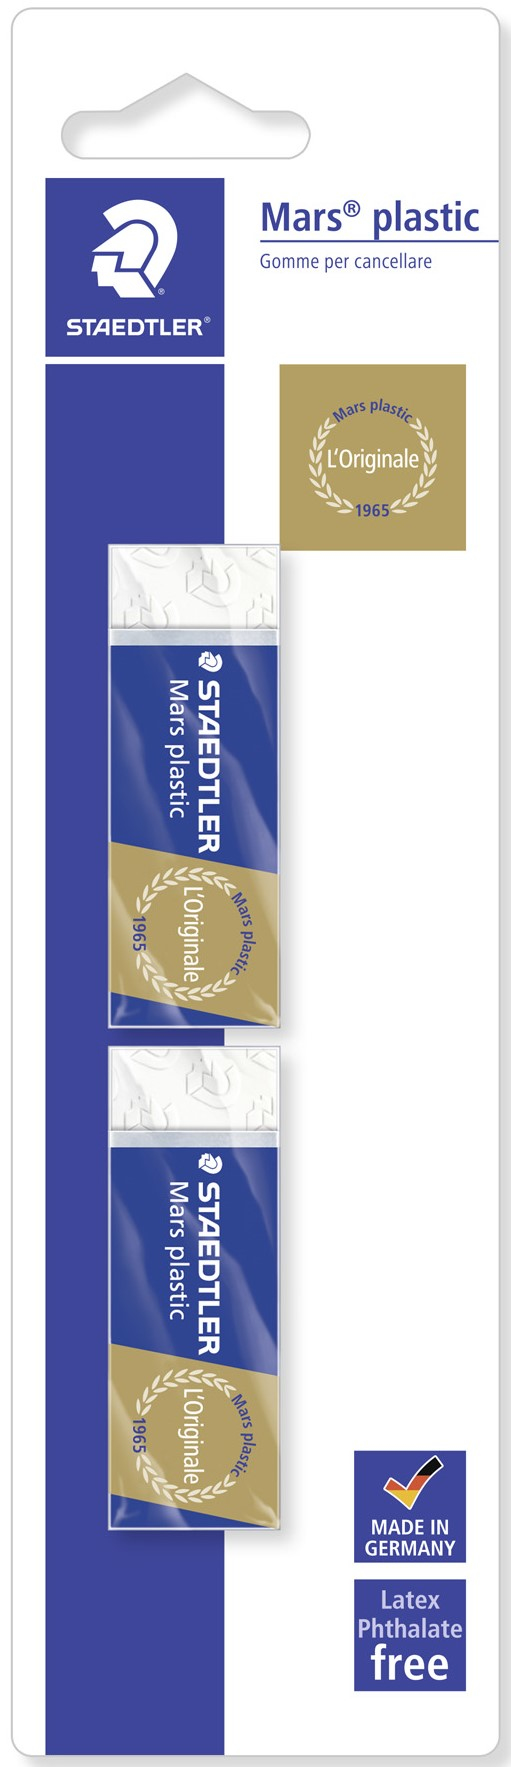 Photos - Eraser / Correction Supply STAEDTLER Mars 526 50 eraser Plastic Blue, White 2 pc(s) 52650BK2DA 